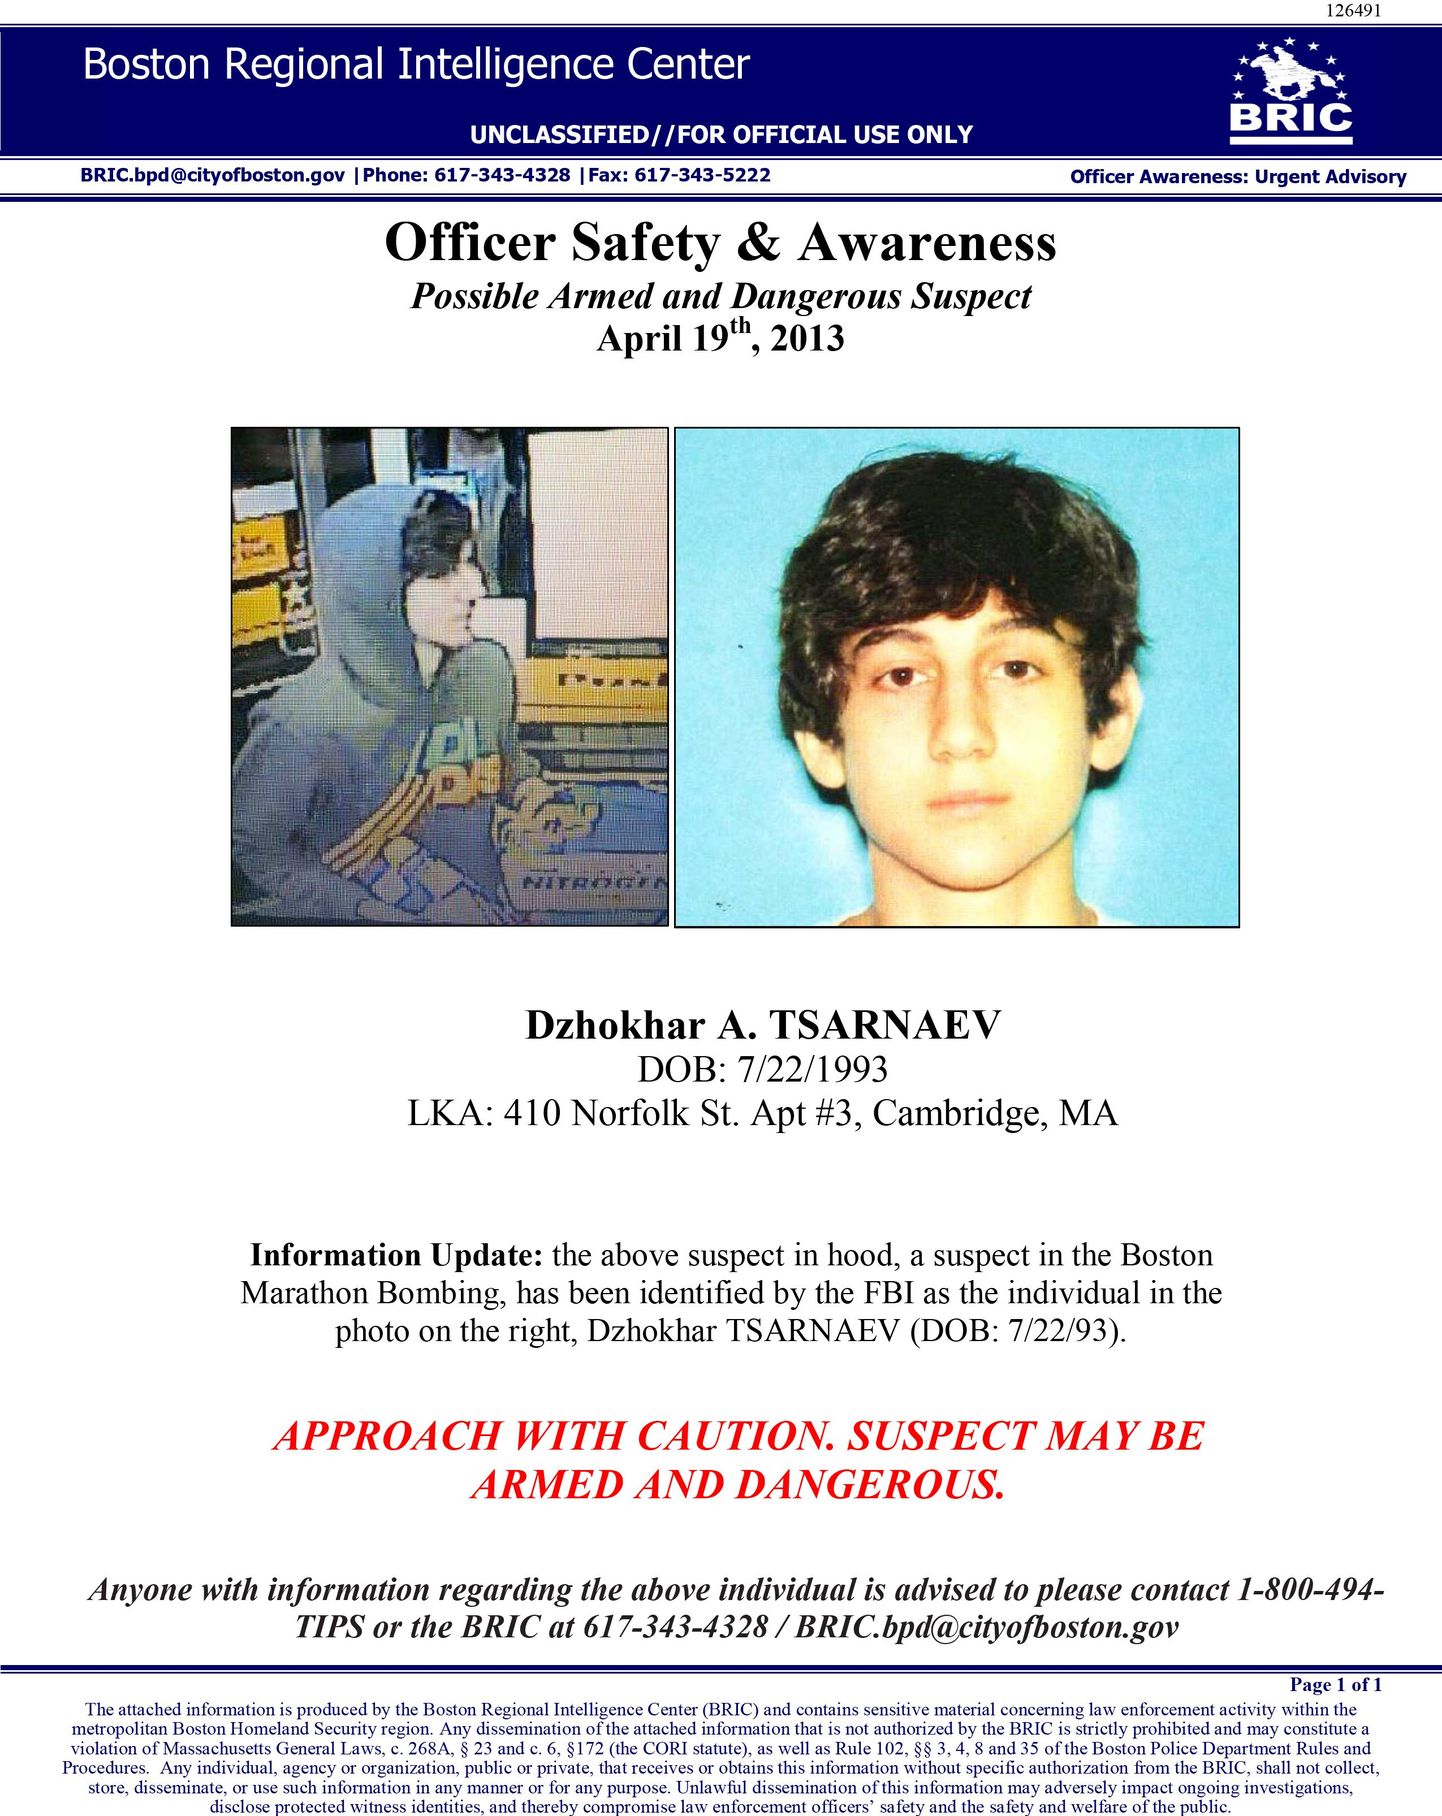 19-aastase Dzhokhar A. Tsarnaevi kohta edastatud teave politseijõududele